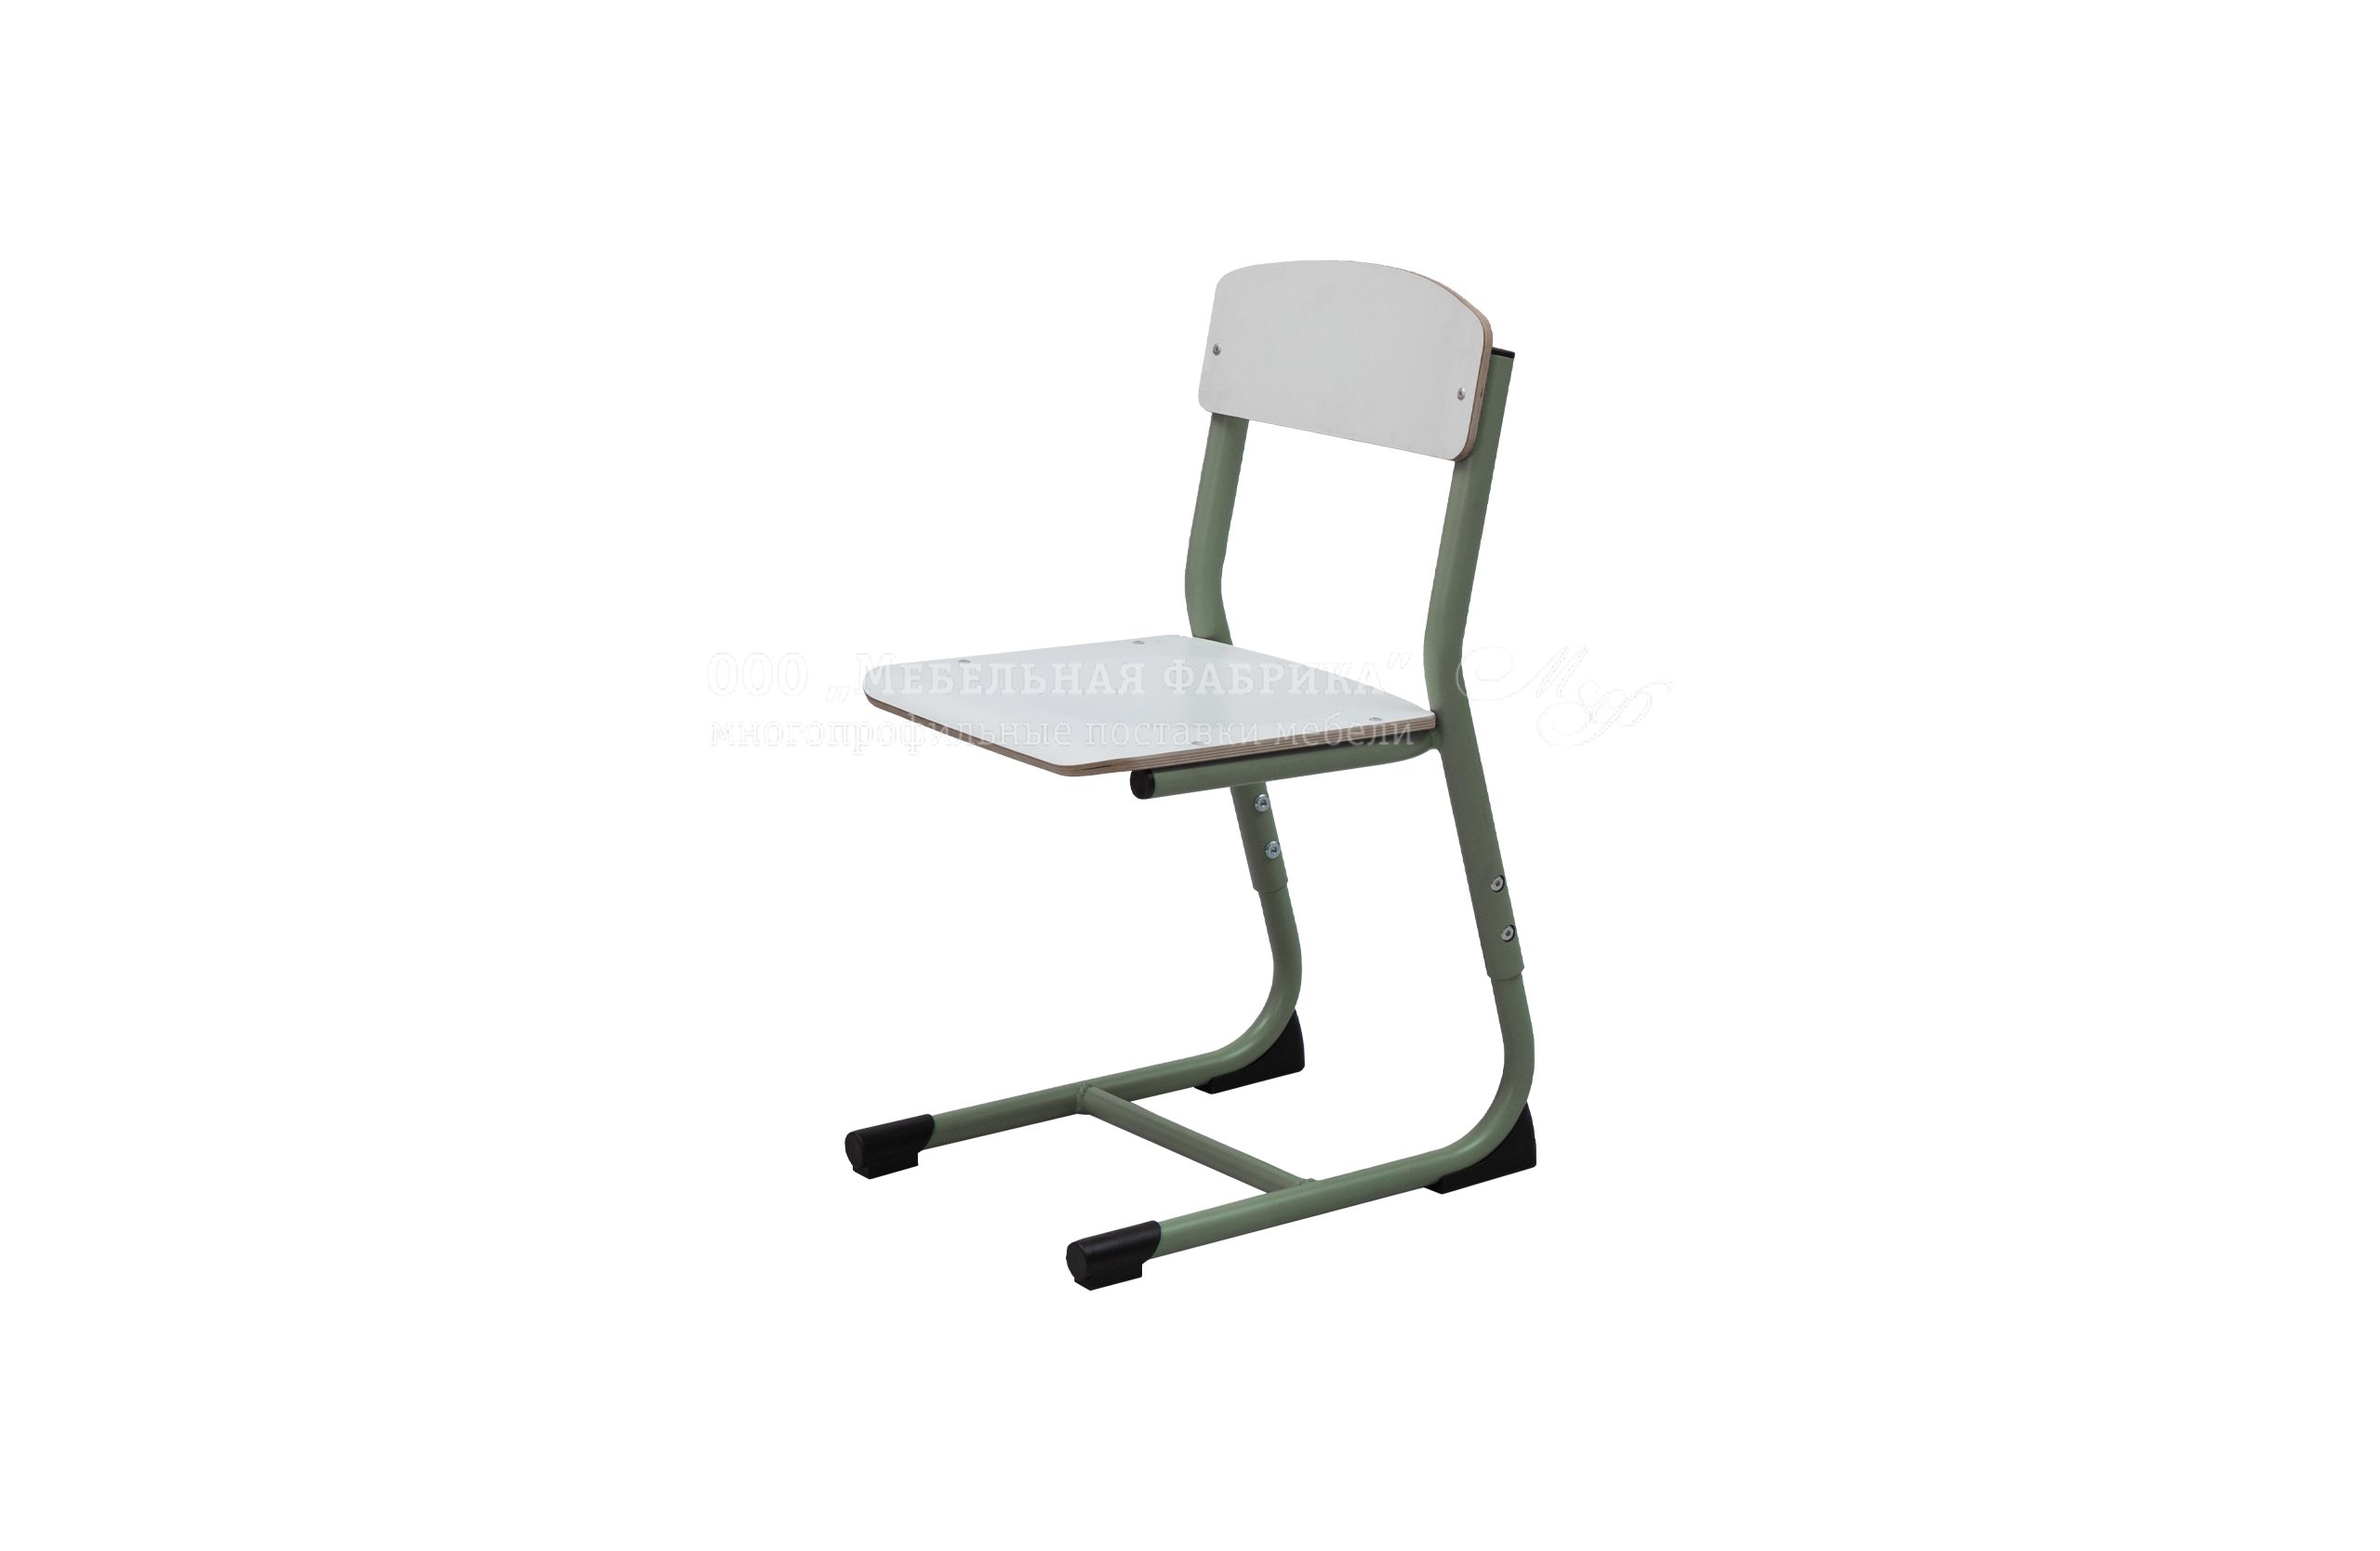 стулья для дошкольников с регулируемыми ножками